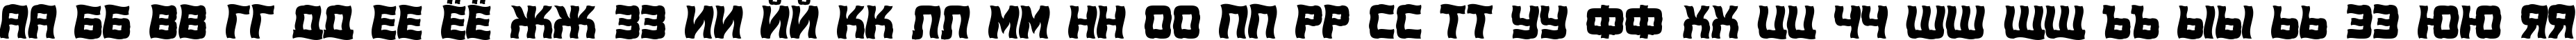 Пример написания русского алфавита шрифтом a_ConceptoTitulNrWv